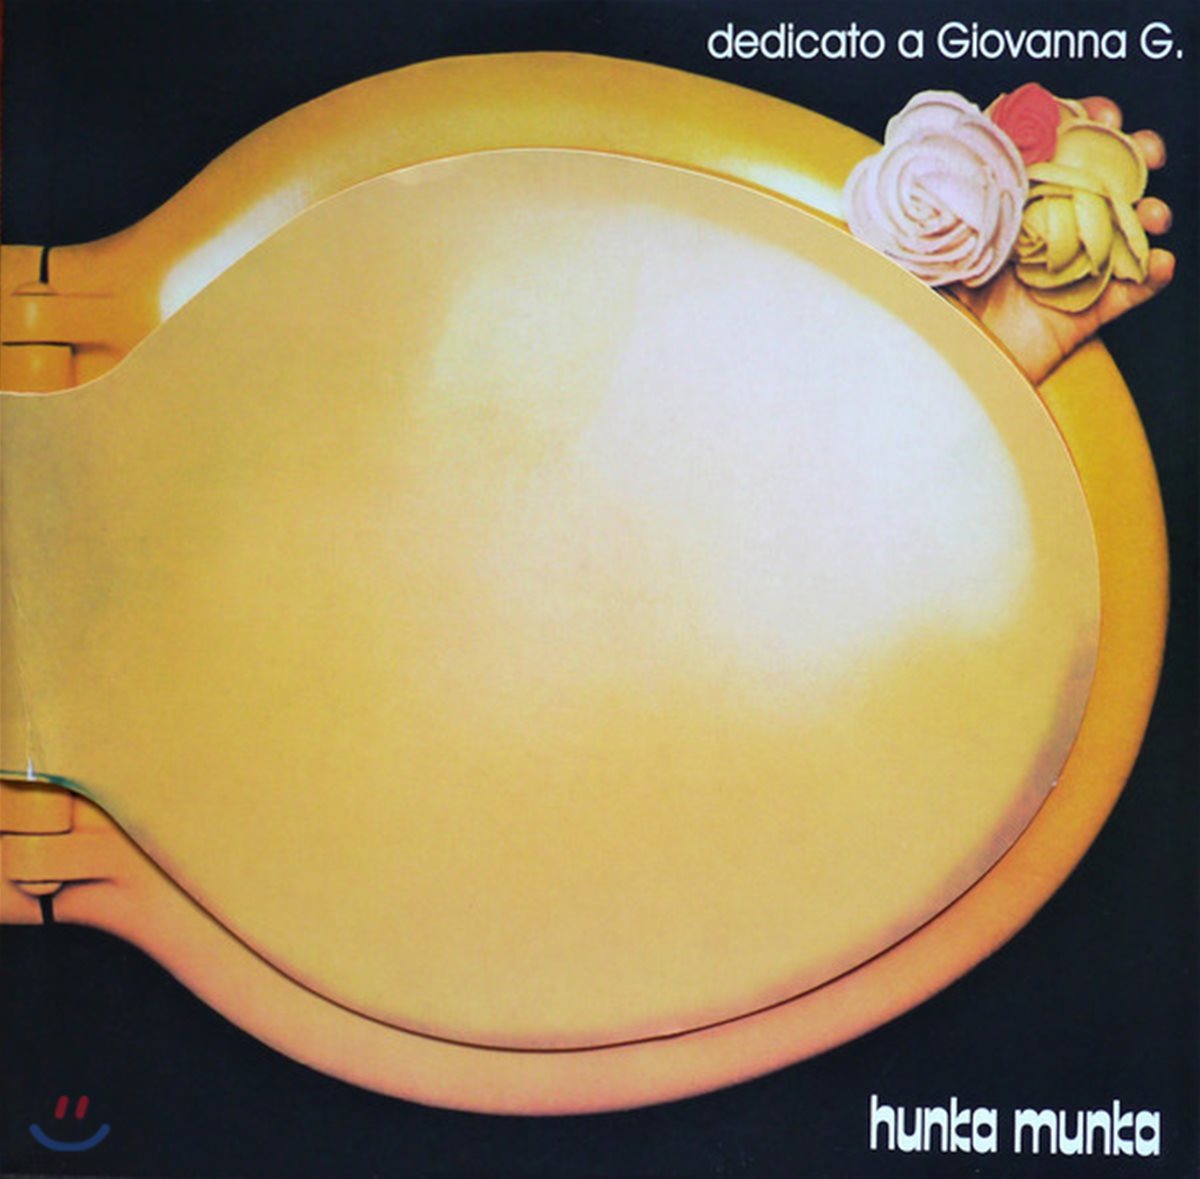 Hunka Munka (훙카 뭉카) - Dedicato a Giovanna G. [LP]